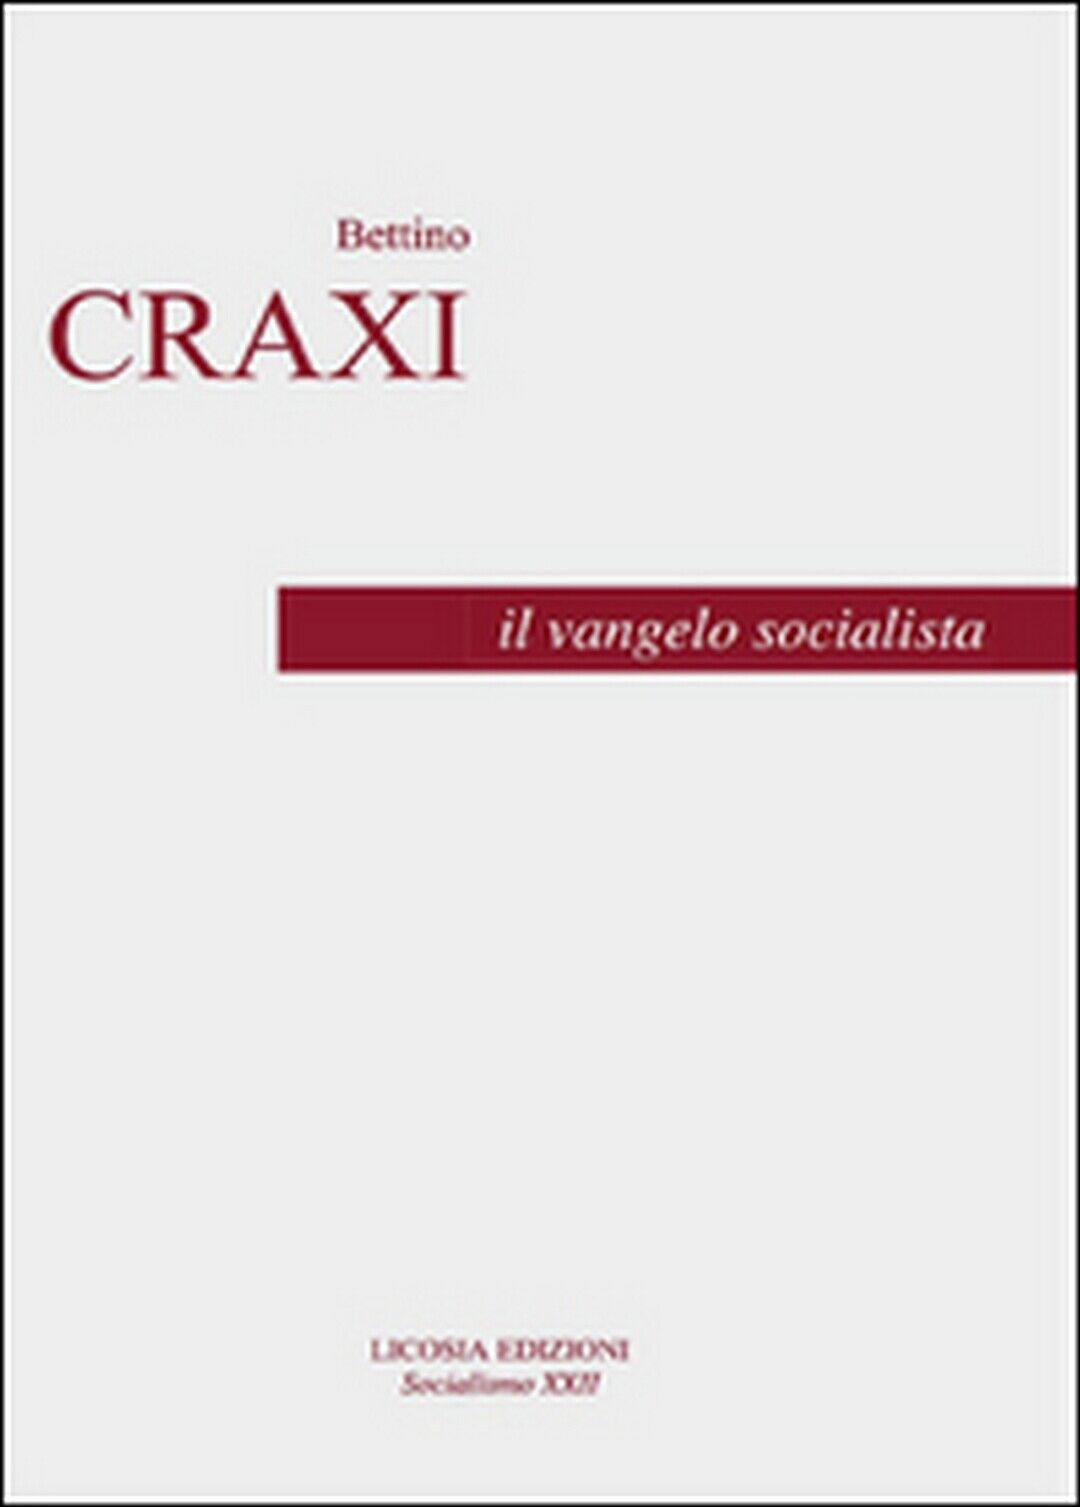 Il vangelo socialista  - Bettino Craxi, Luciano Pellicani,  2016,  Licosia